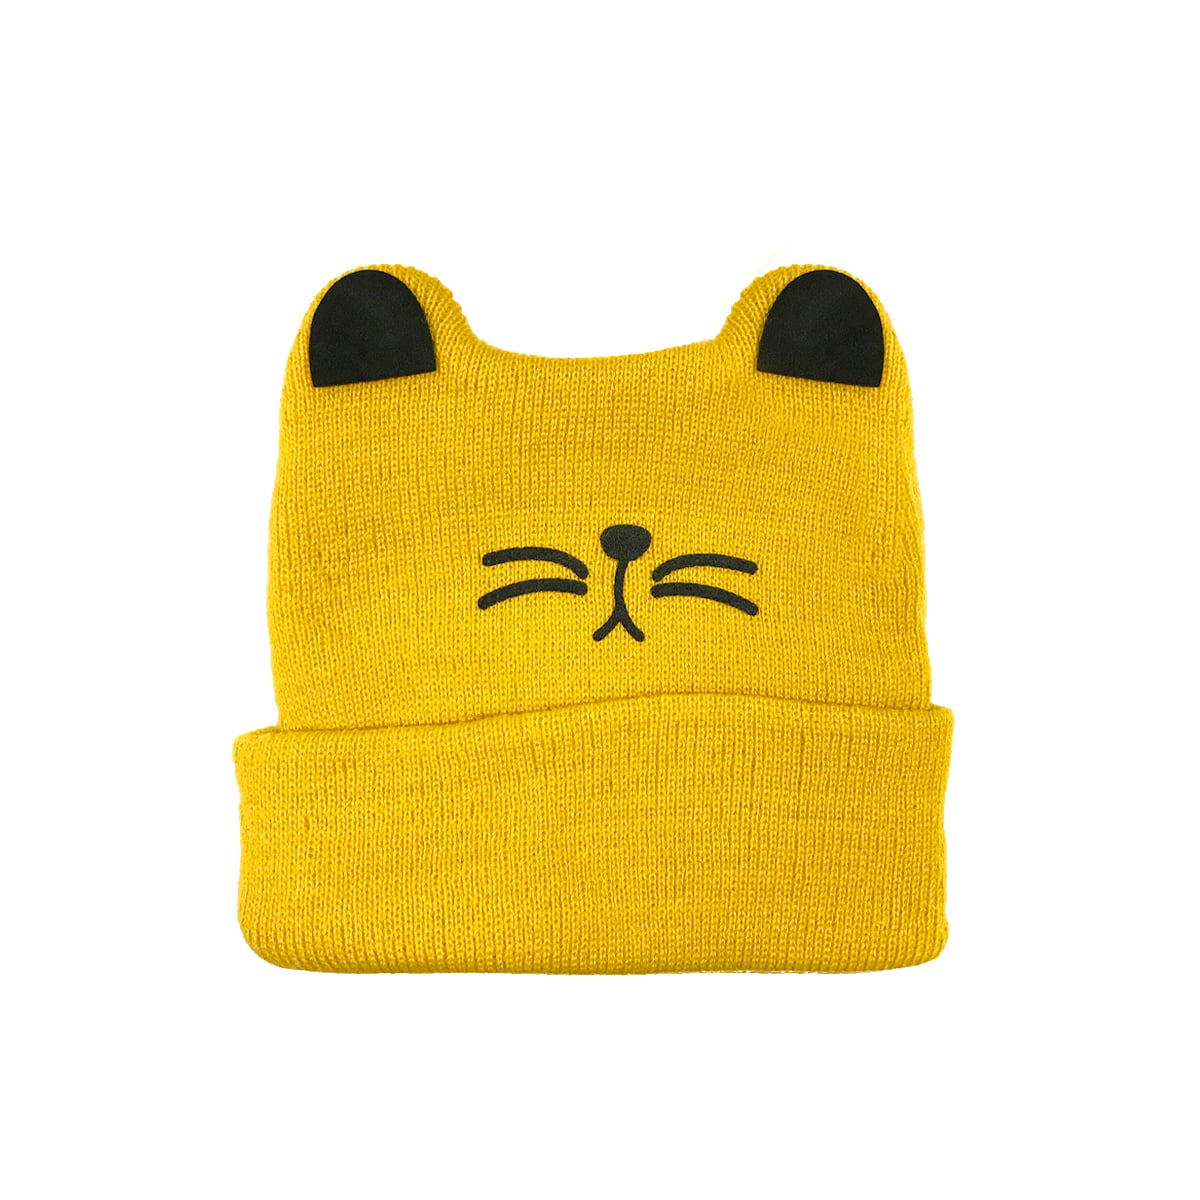 Met andere bands Dank u voor uw hulp Effectiviteit Wrapables® Baby Knitted Winter Warm Cat Ear Beanie Cap Hat, Yellow -  Walmart.com